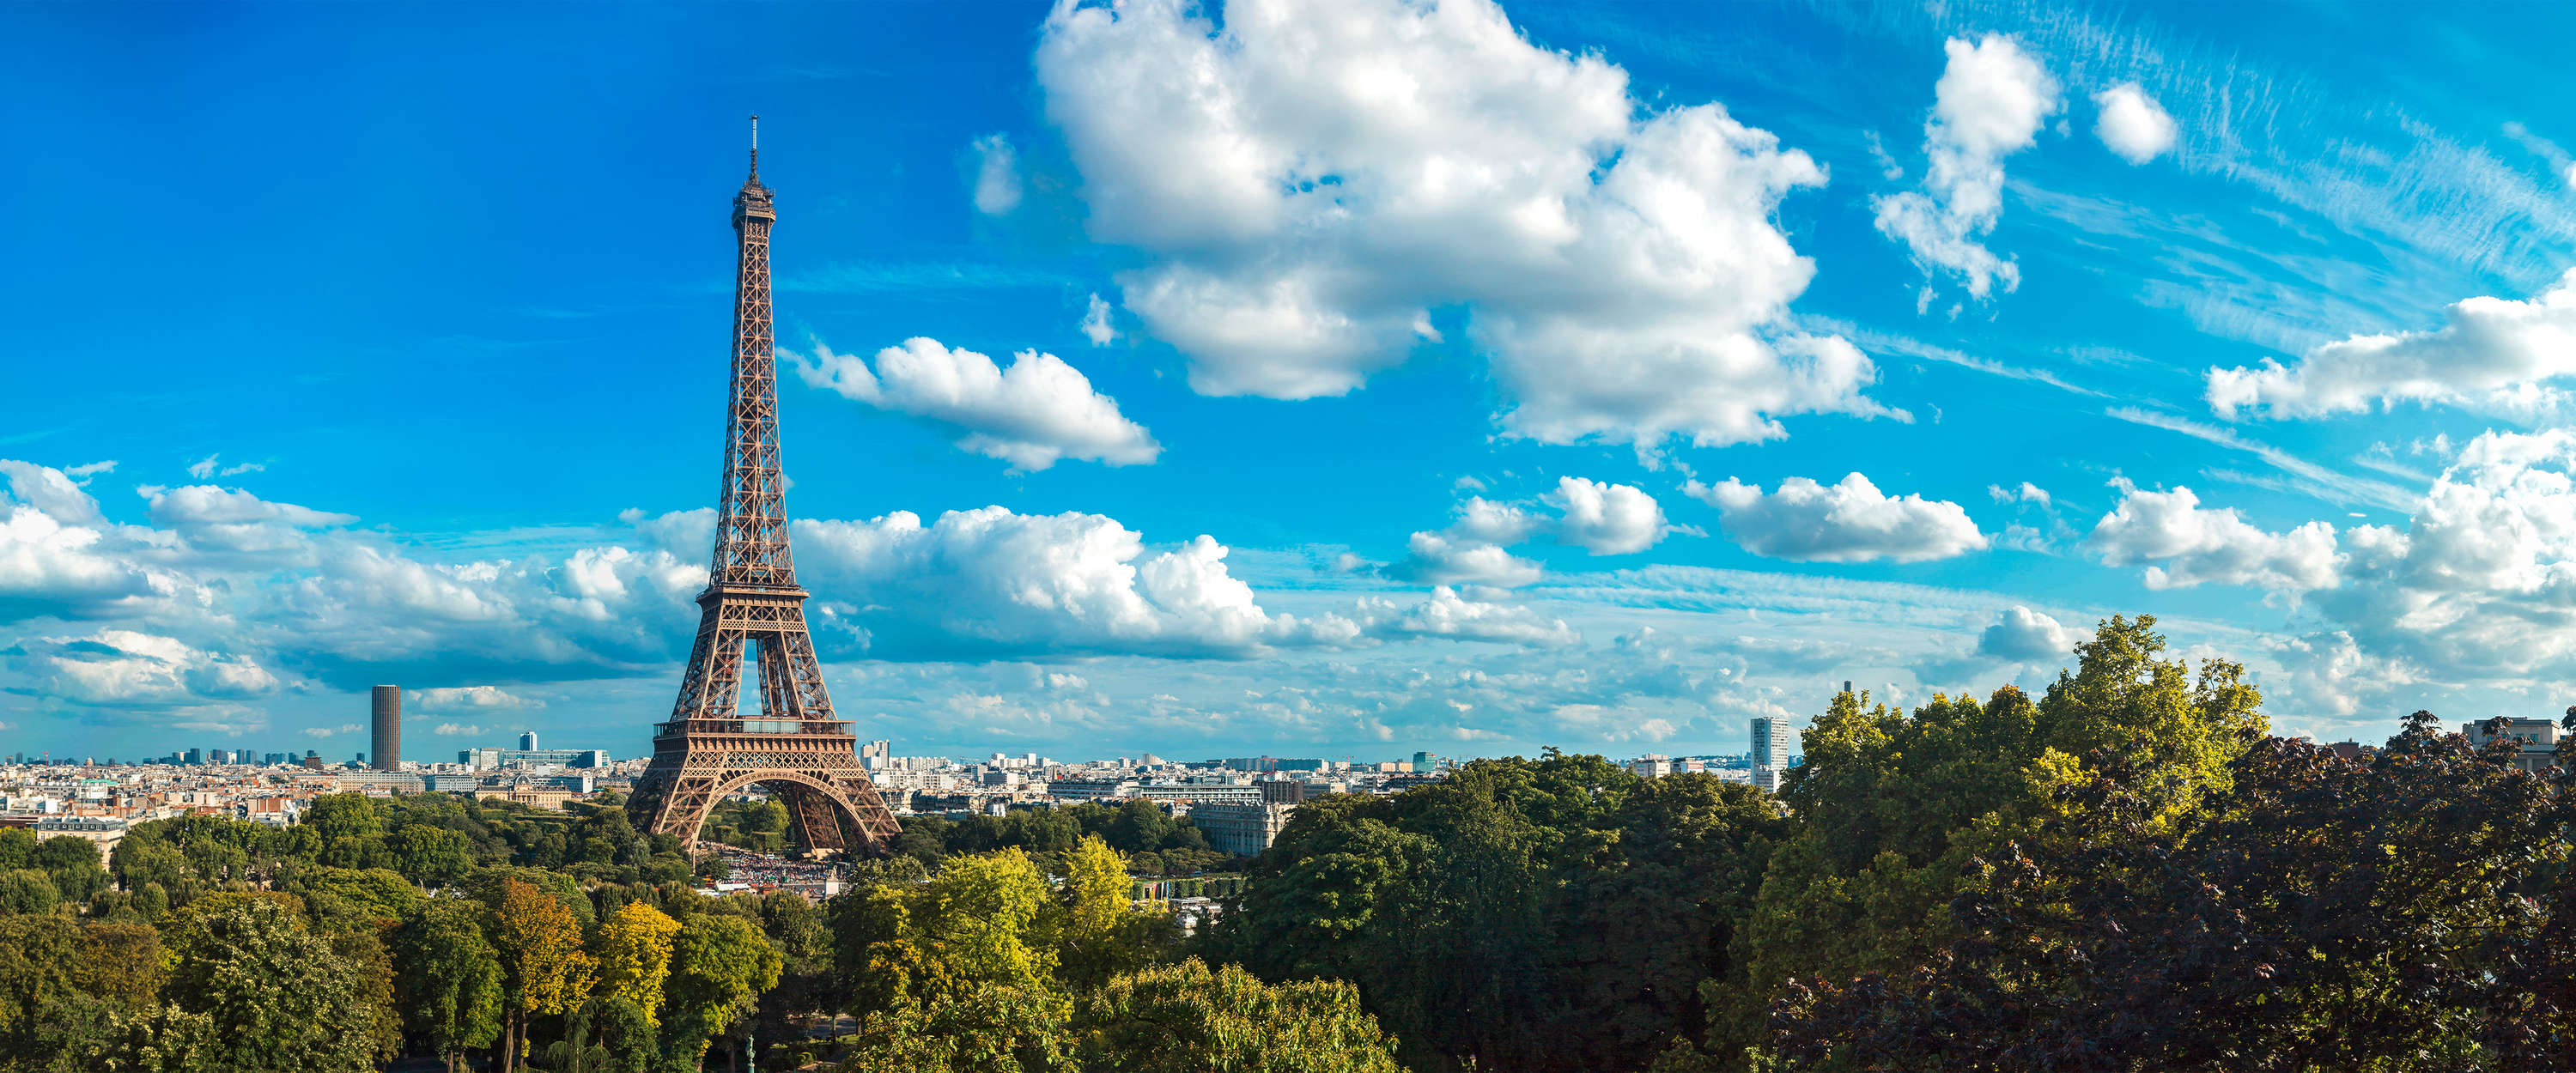             Papel pintado de la Torre Eiffel y el horizonte de París
        